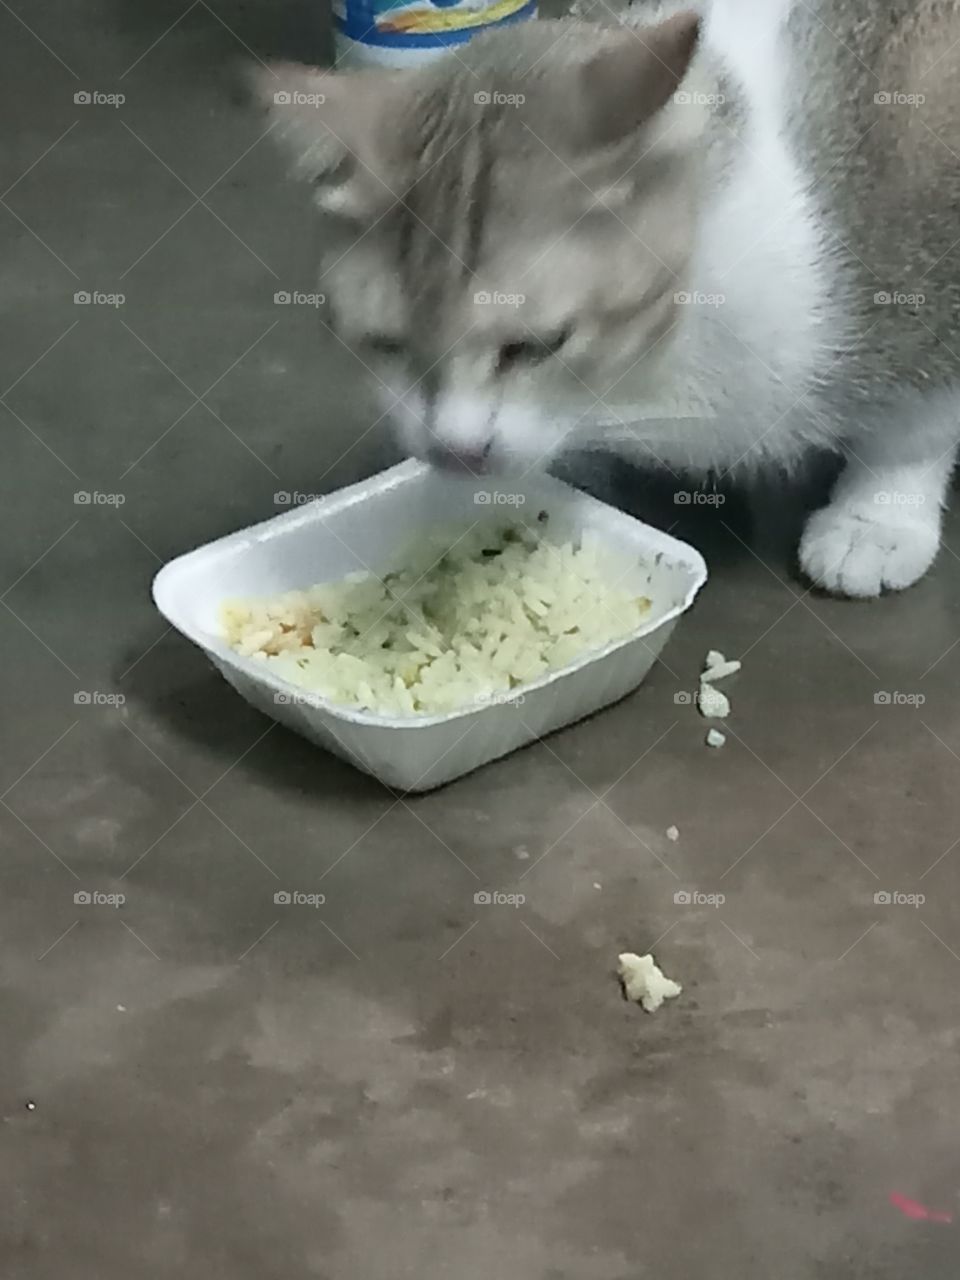 Cute cat eating